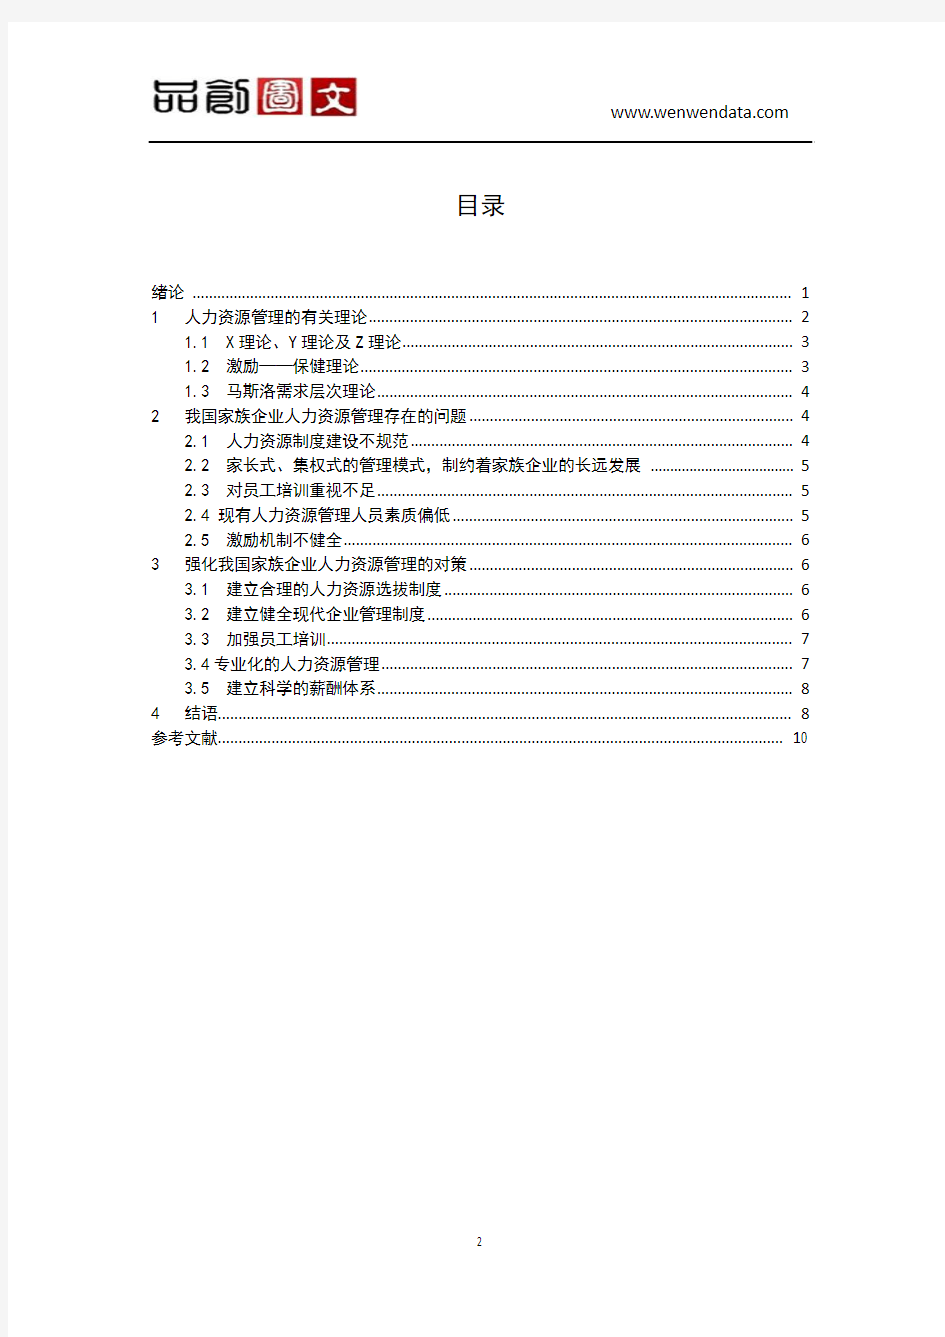 重庆市顺丰快递的物流管理模式分析-毕业论文